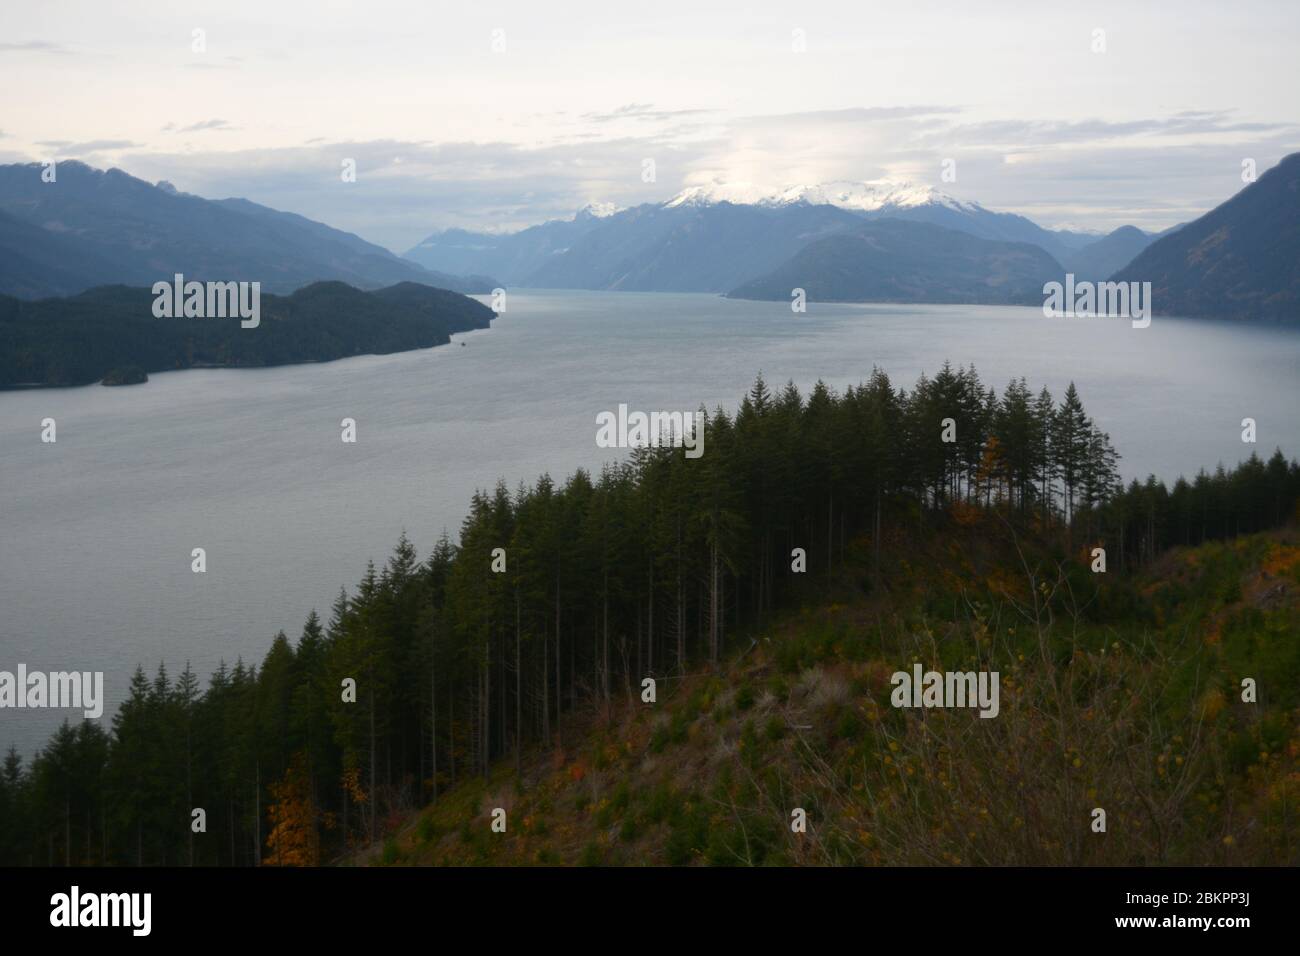 Harrison Lake e le Cime della Costa Mountain del Monte Breakenridge della catena Lillooet, vicino a Harrison Hot Springs, British Columbia, Canada. Foto Stock